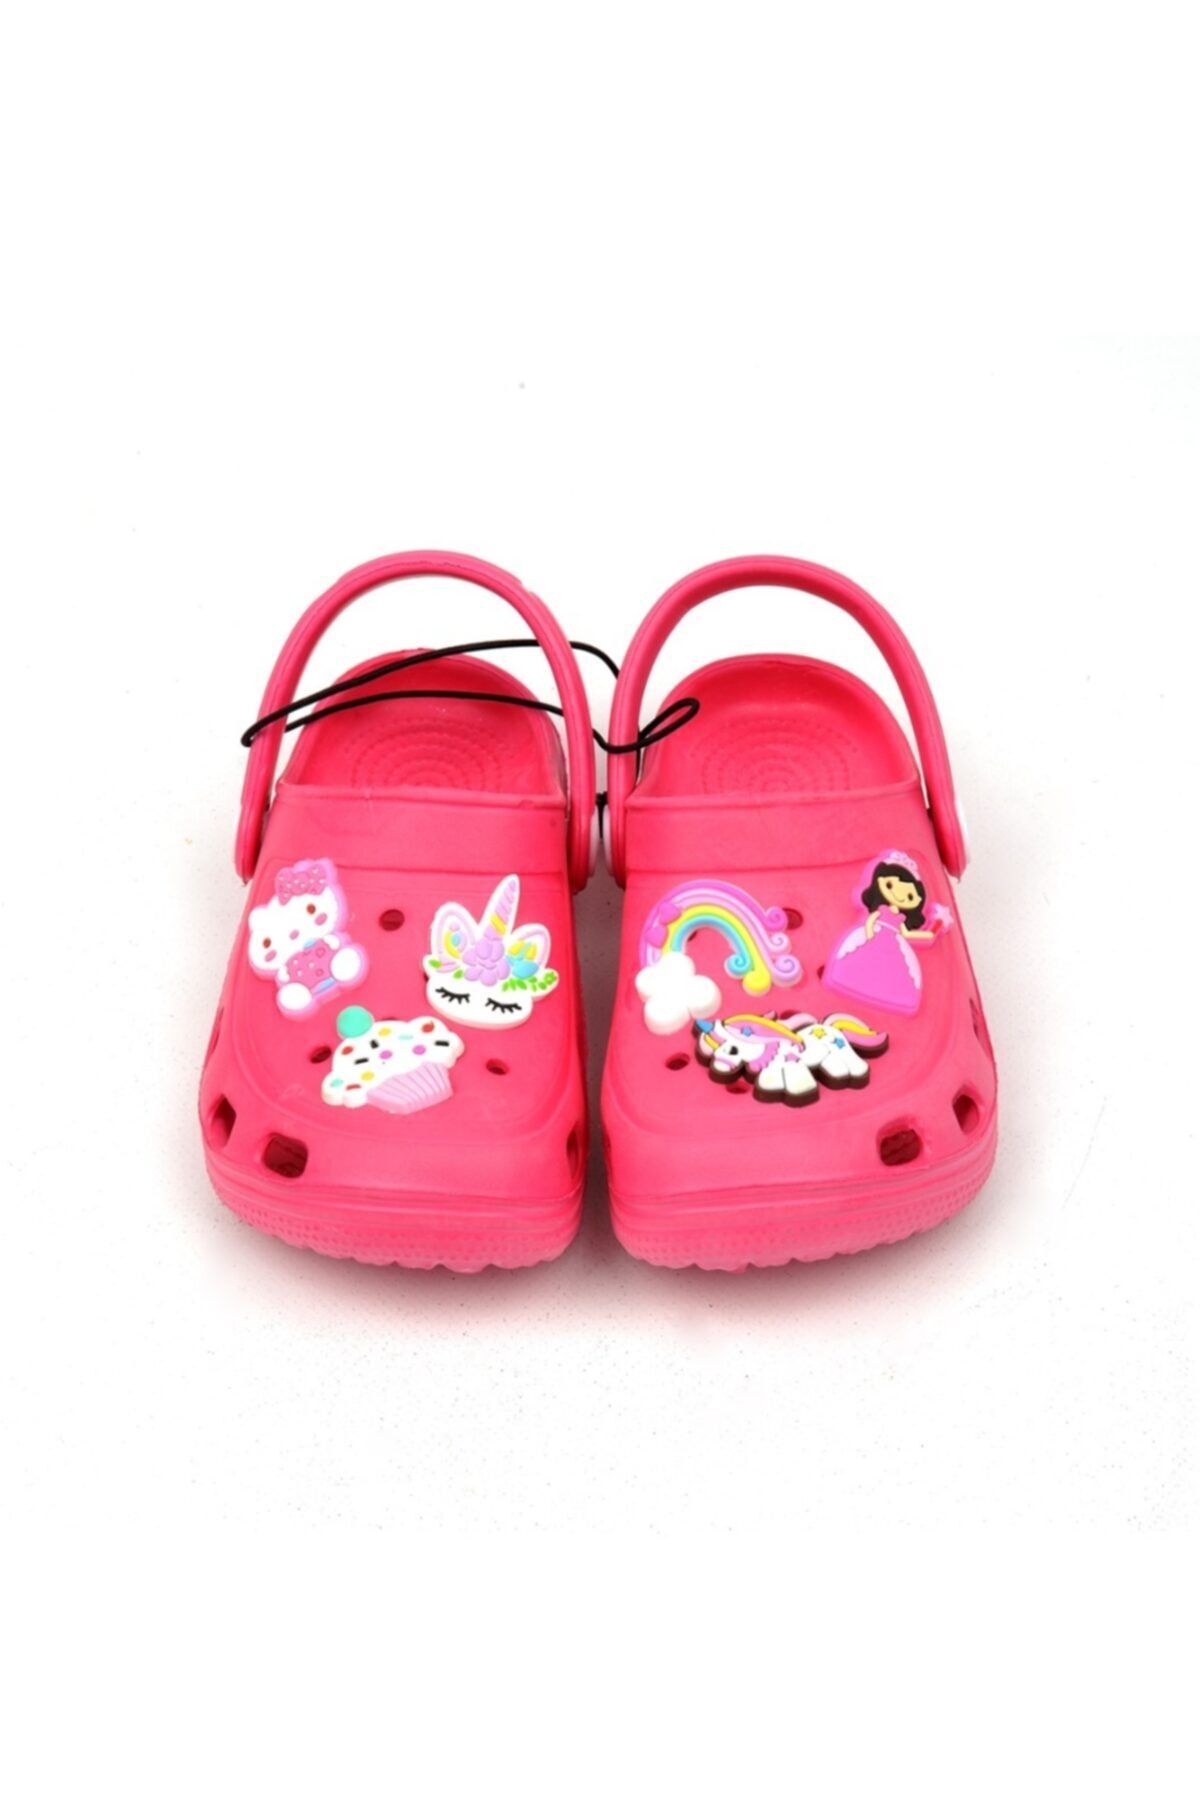 QUEEN AKSESUAR Kız Çıcuk Pembe Crocs Tarz Model Sandalet Terlik Prenses Hello Kitty Unicorn Gökkuşağı Süslü